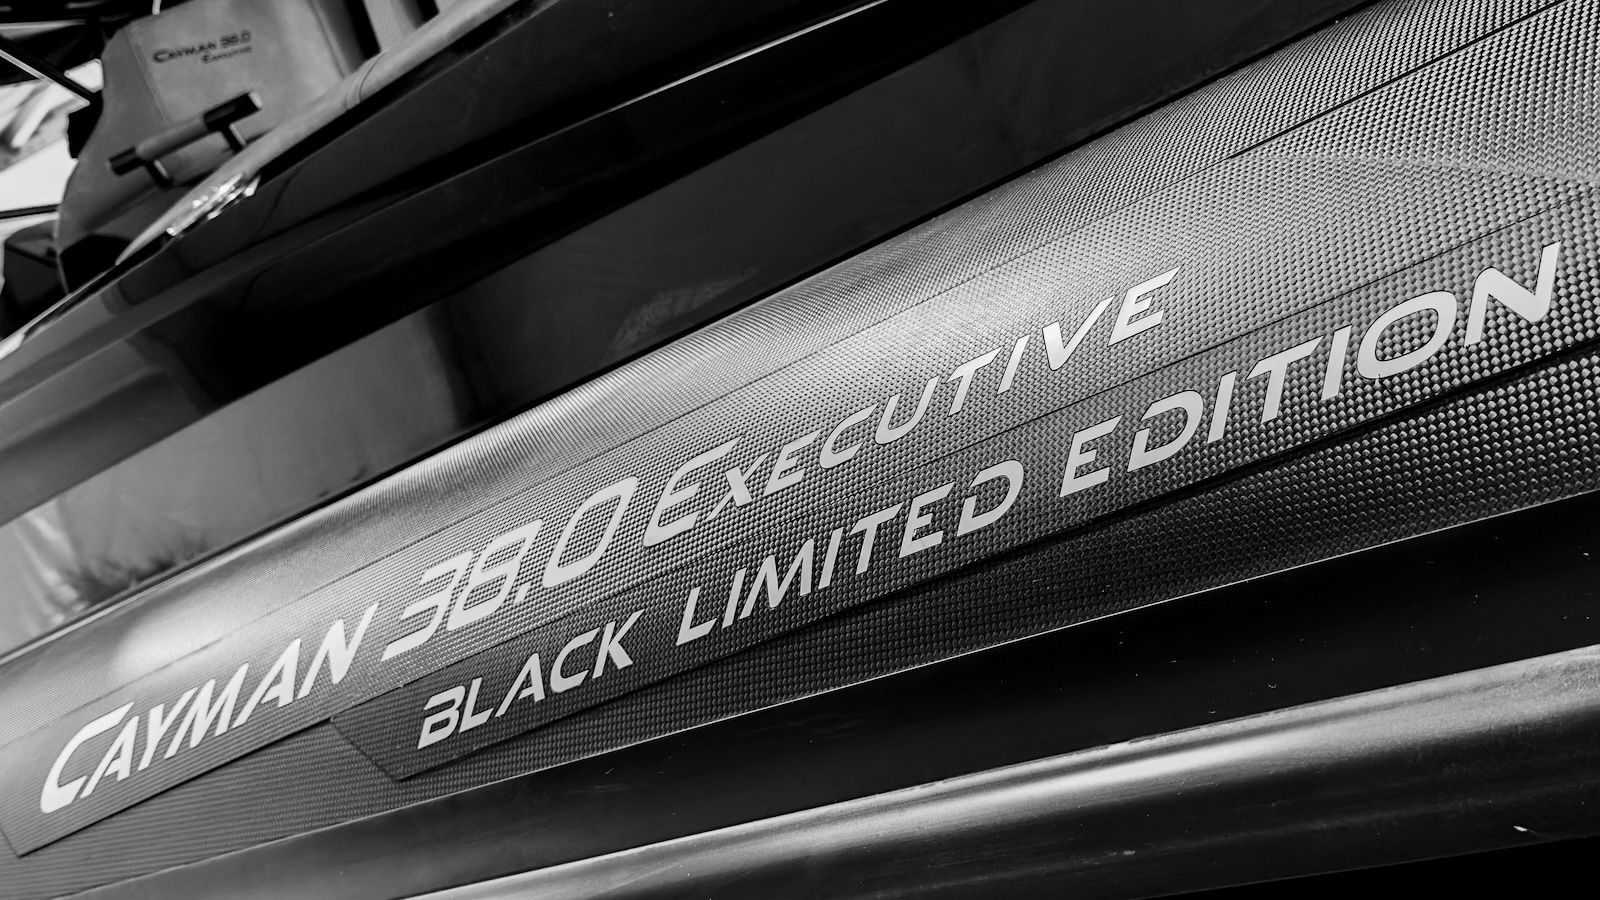 Cayman 38.0 Executive Black Limited Edition: Ranieri International svela a Miami un nuovo gioiello.